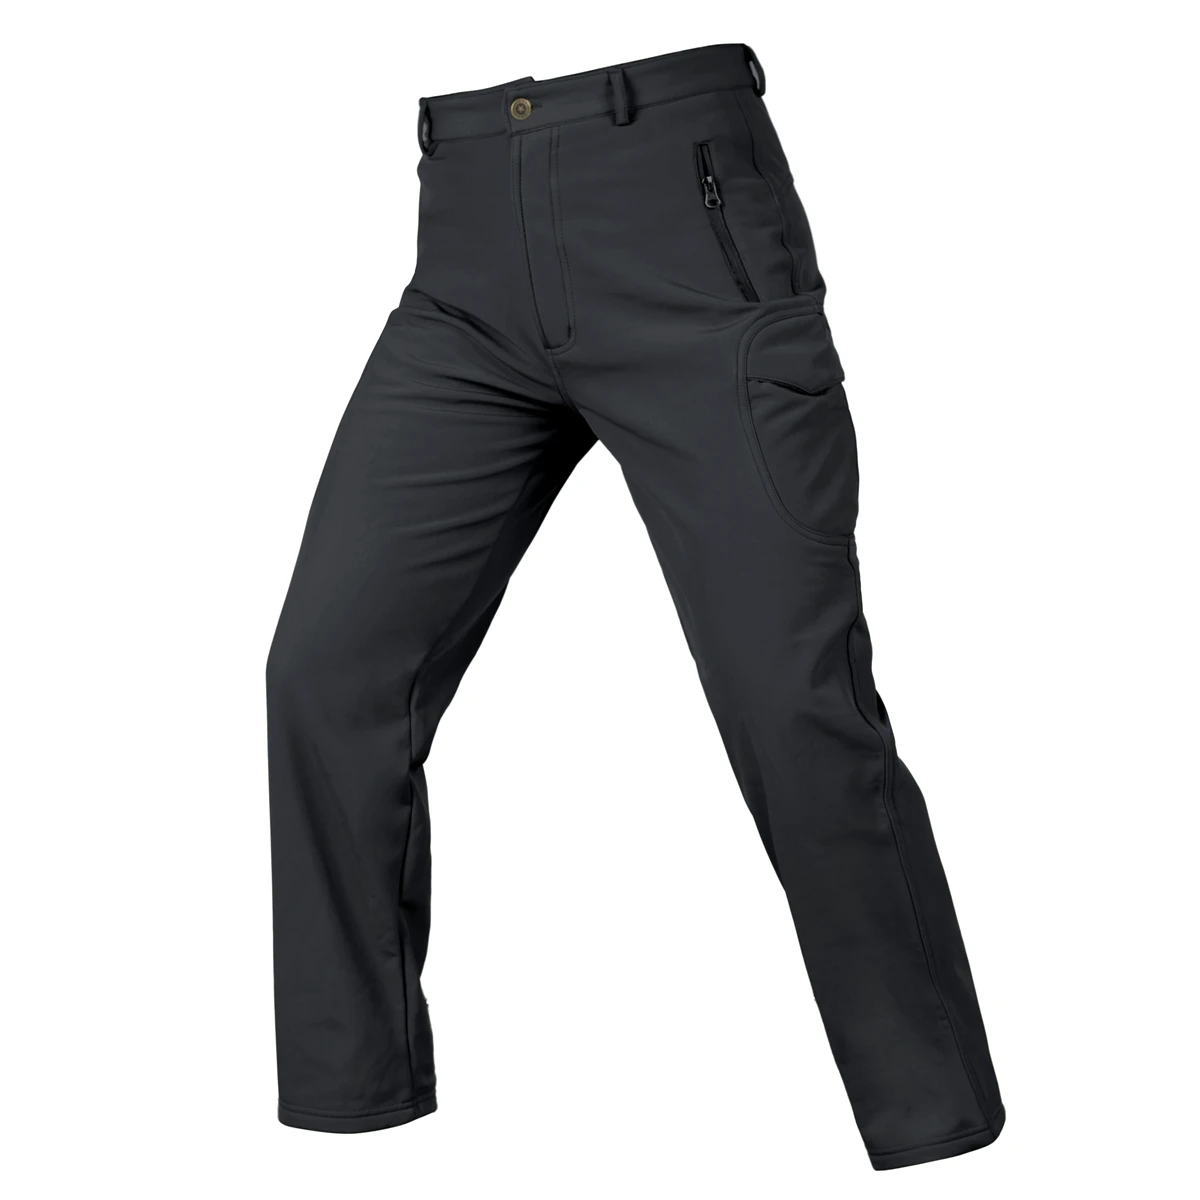 Pantalon Hombre треккинг военный походные уличные штаны армейский тренировочный военный брюки спортивные брюки для походов охотничьи брюки - Цвет: 09